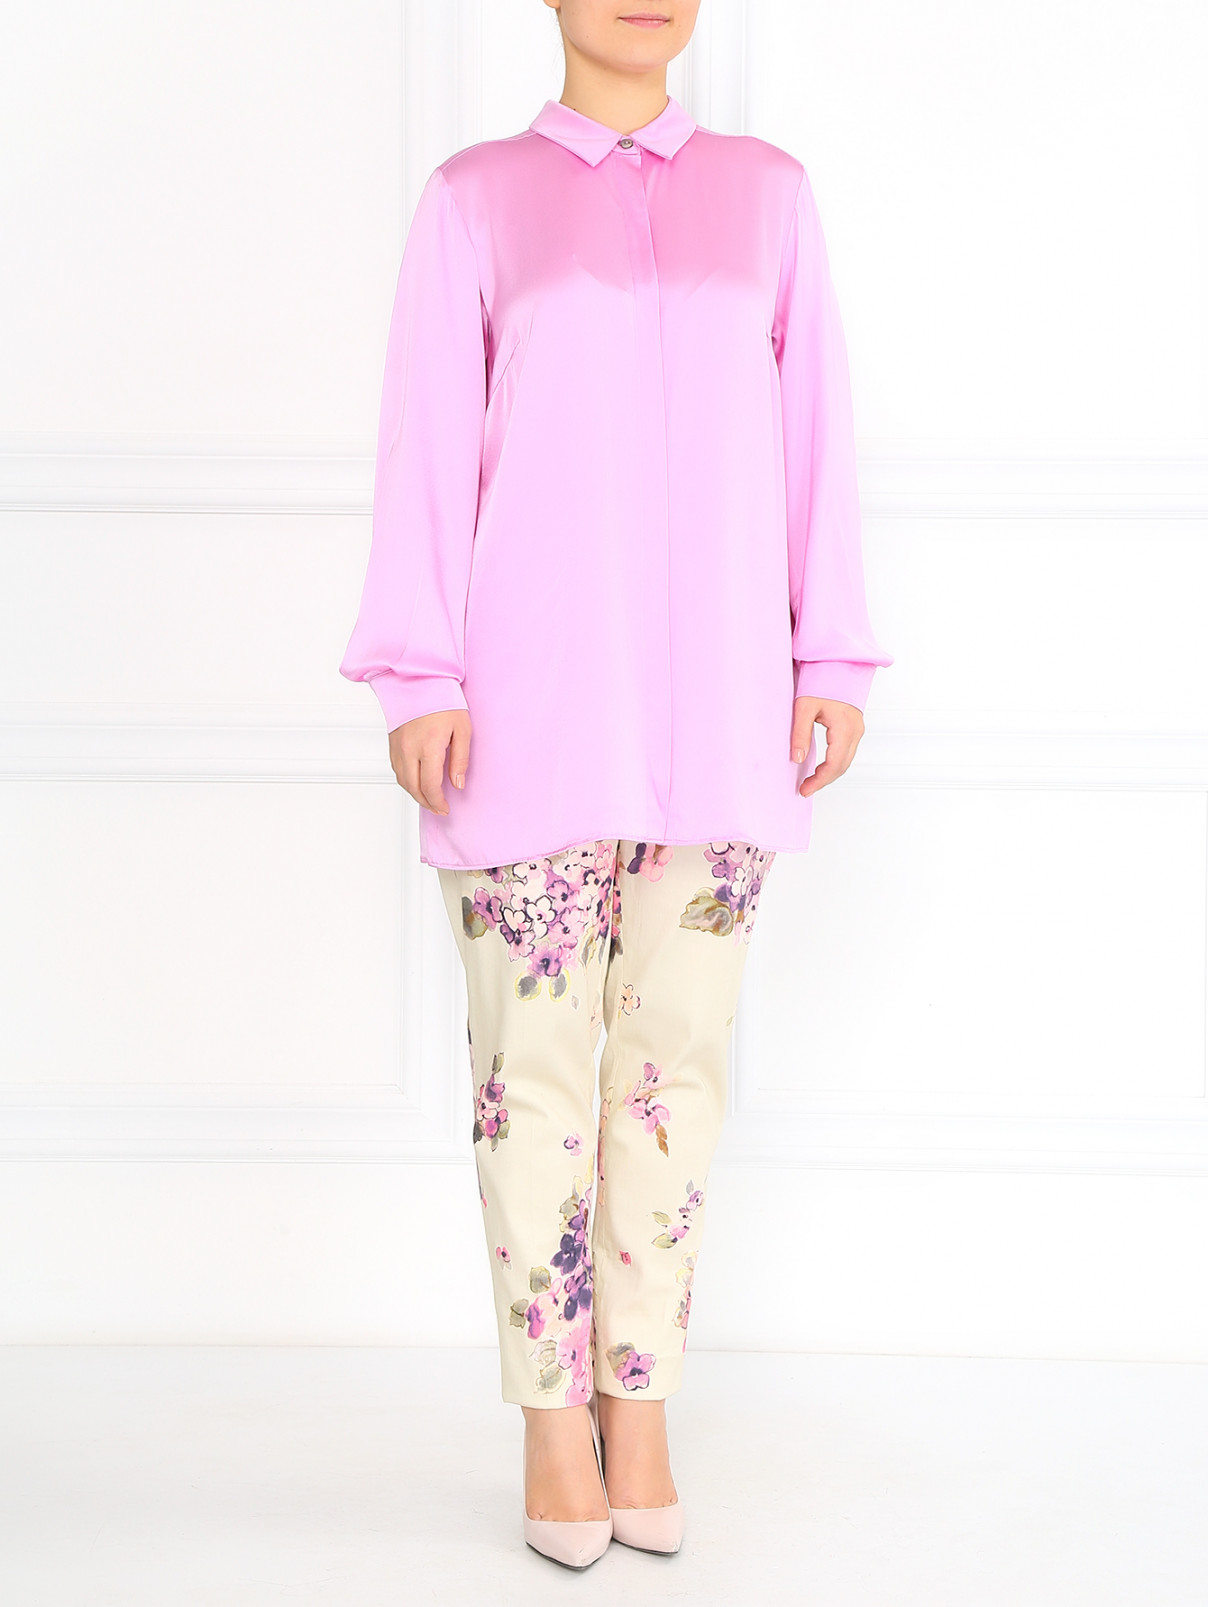 Шелковая блуза с длинным рукавом Marina Rinaldi  –  Модель Общий вид  – Цвет:  Розовый